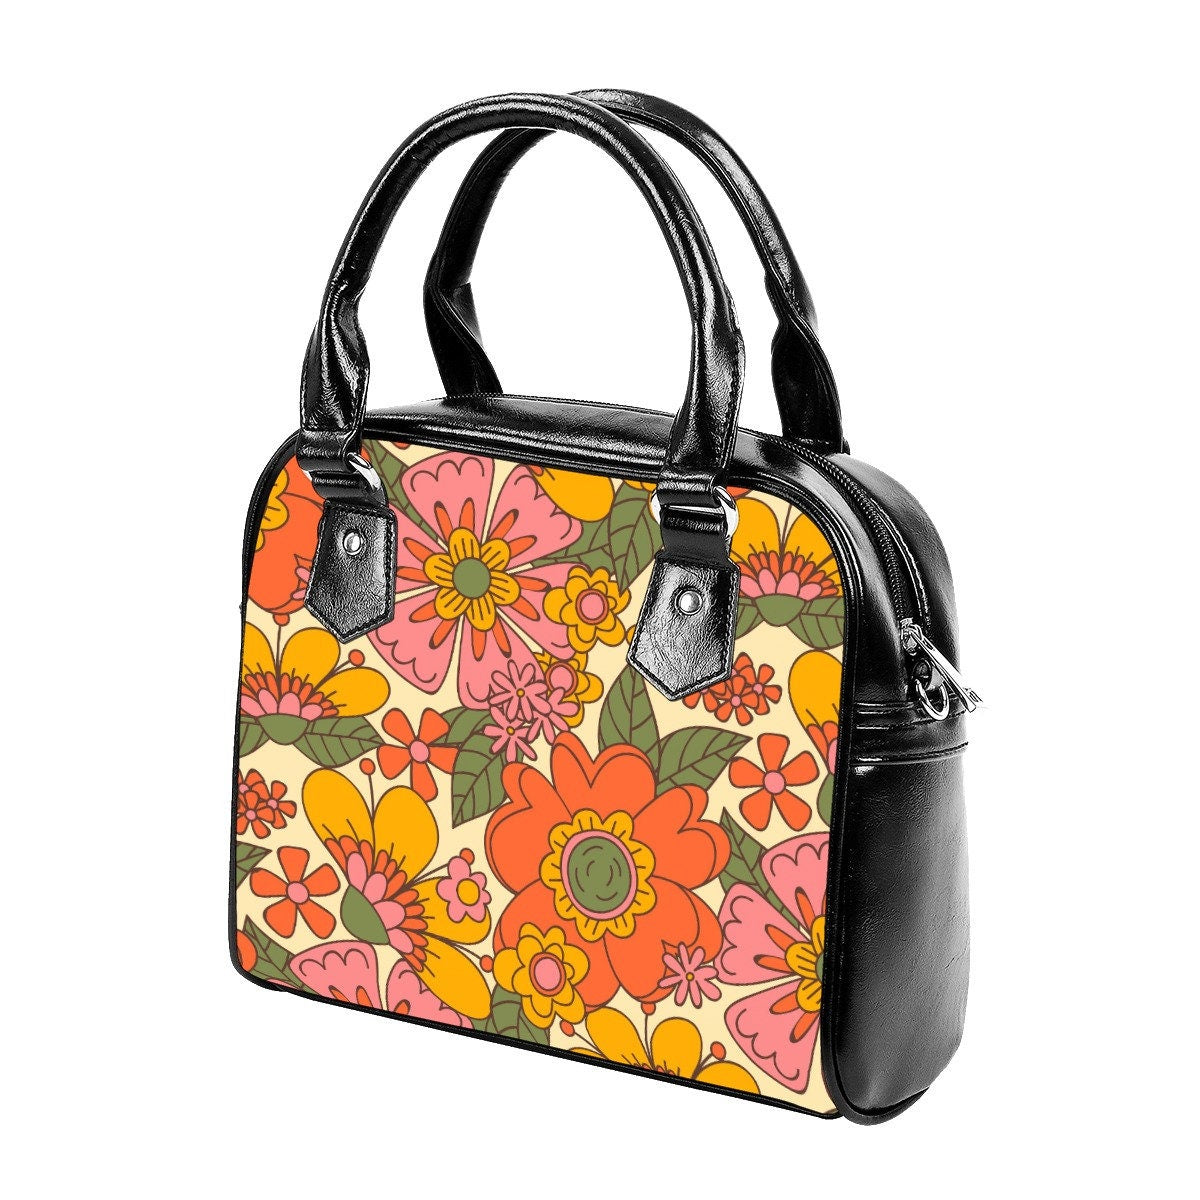 Retro Handbag, 70s Style Purse, 70s Style Handbag, Floral Handbag, Hippie Purse, Multicolor handbag, Vintage style handbag, 70s inspired bag